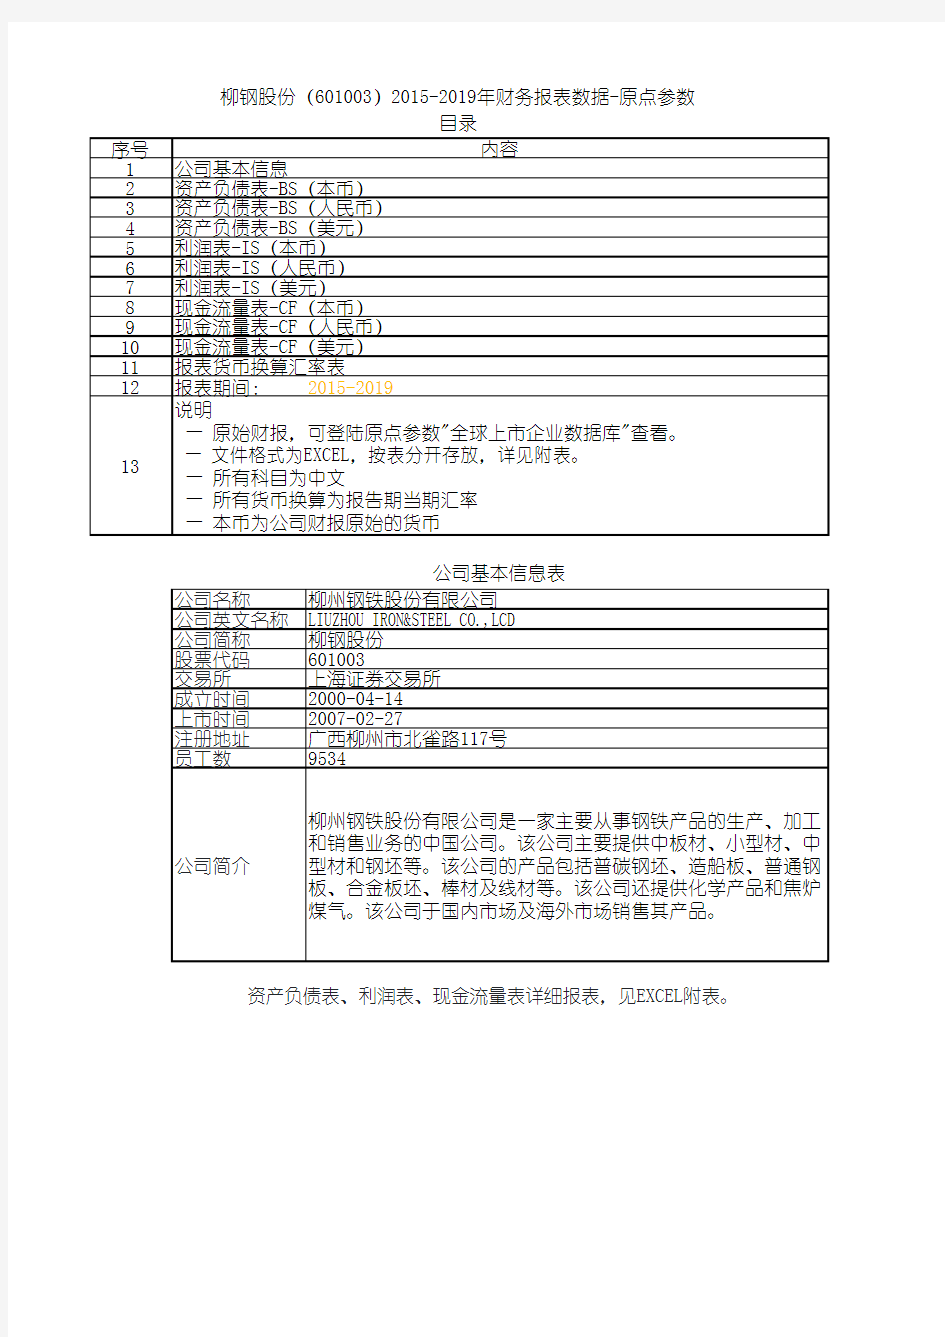 柳钢股份(601003)2015-2019年财务报表数据-原点参数